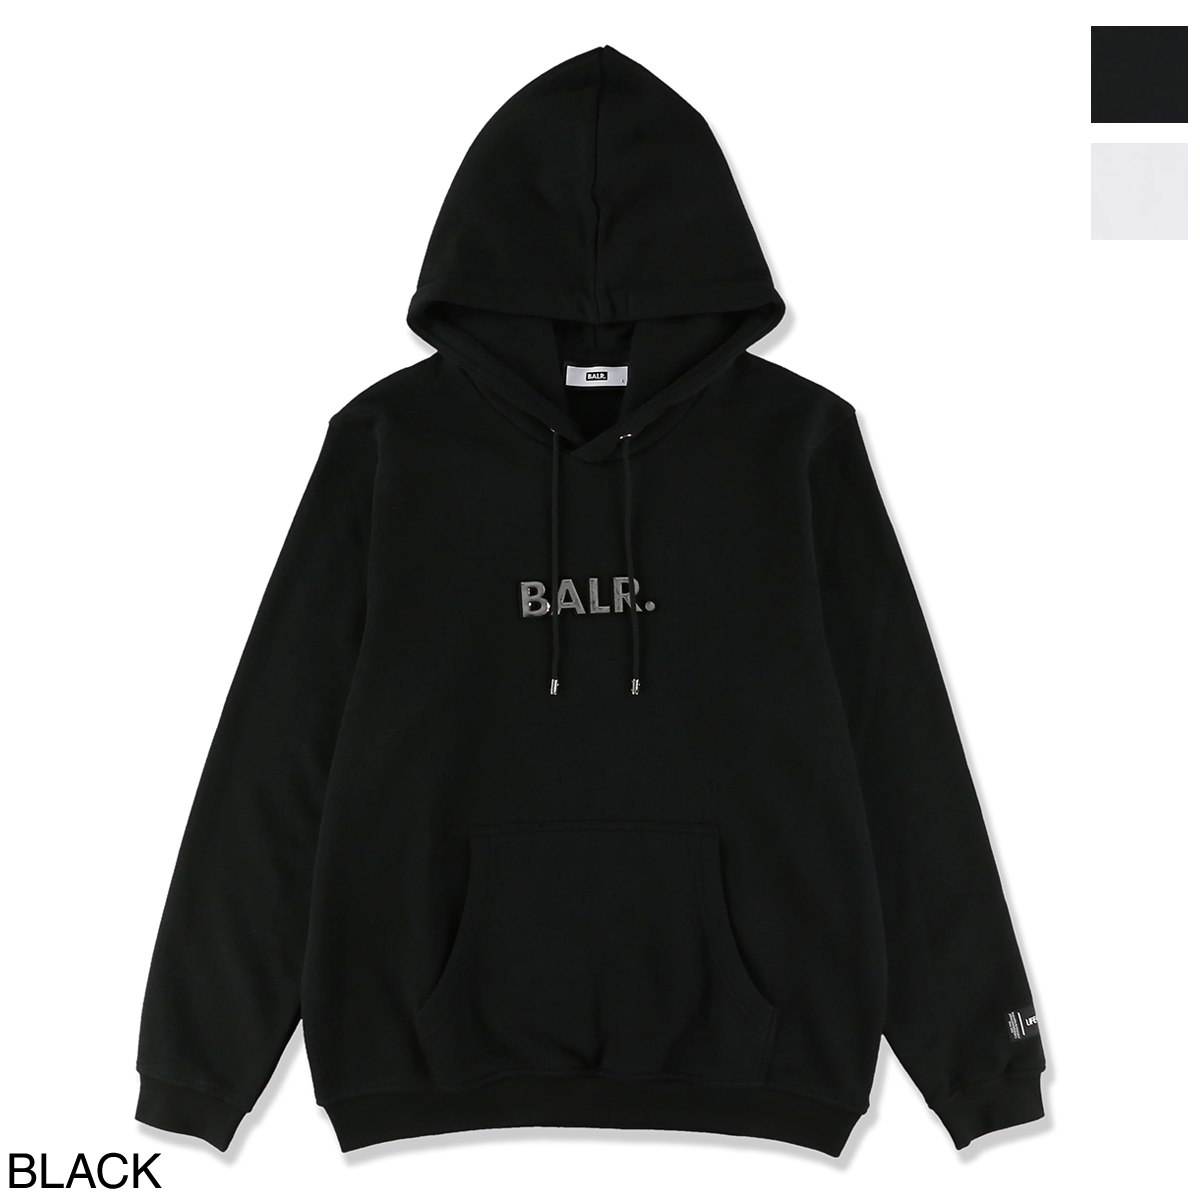 balr hoodie black